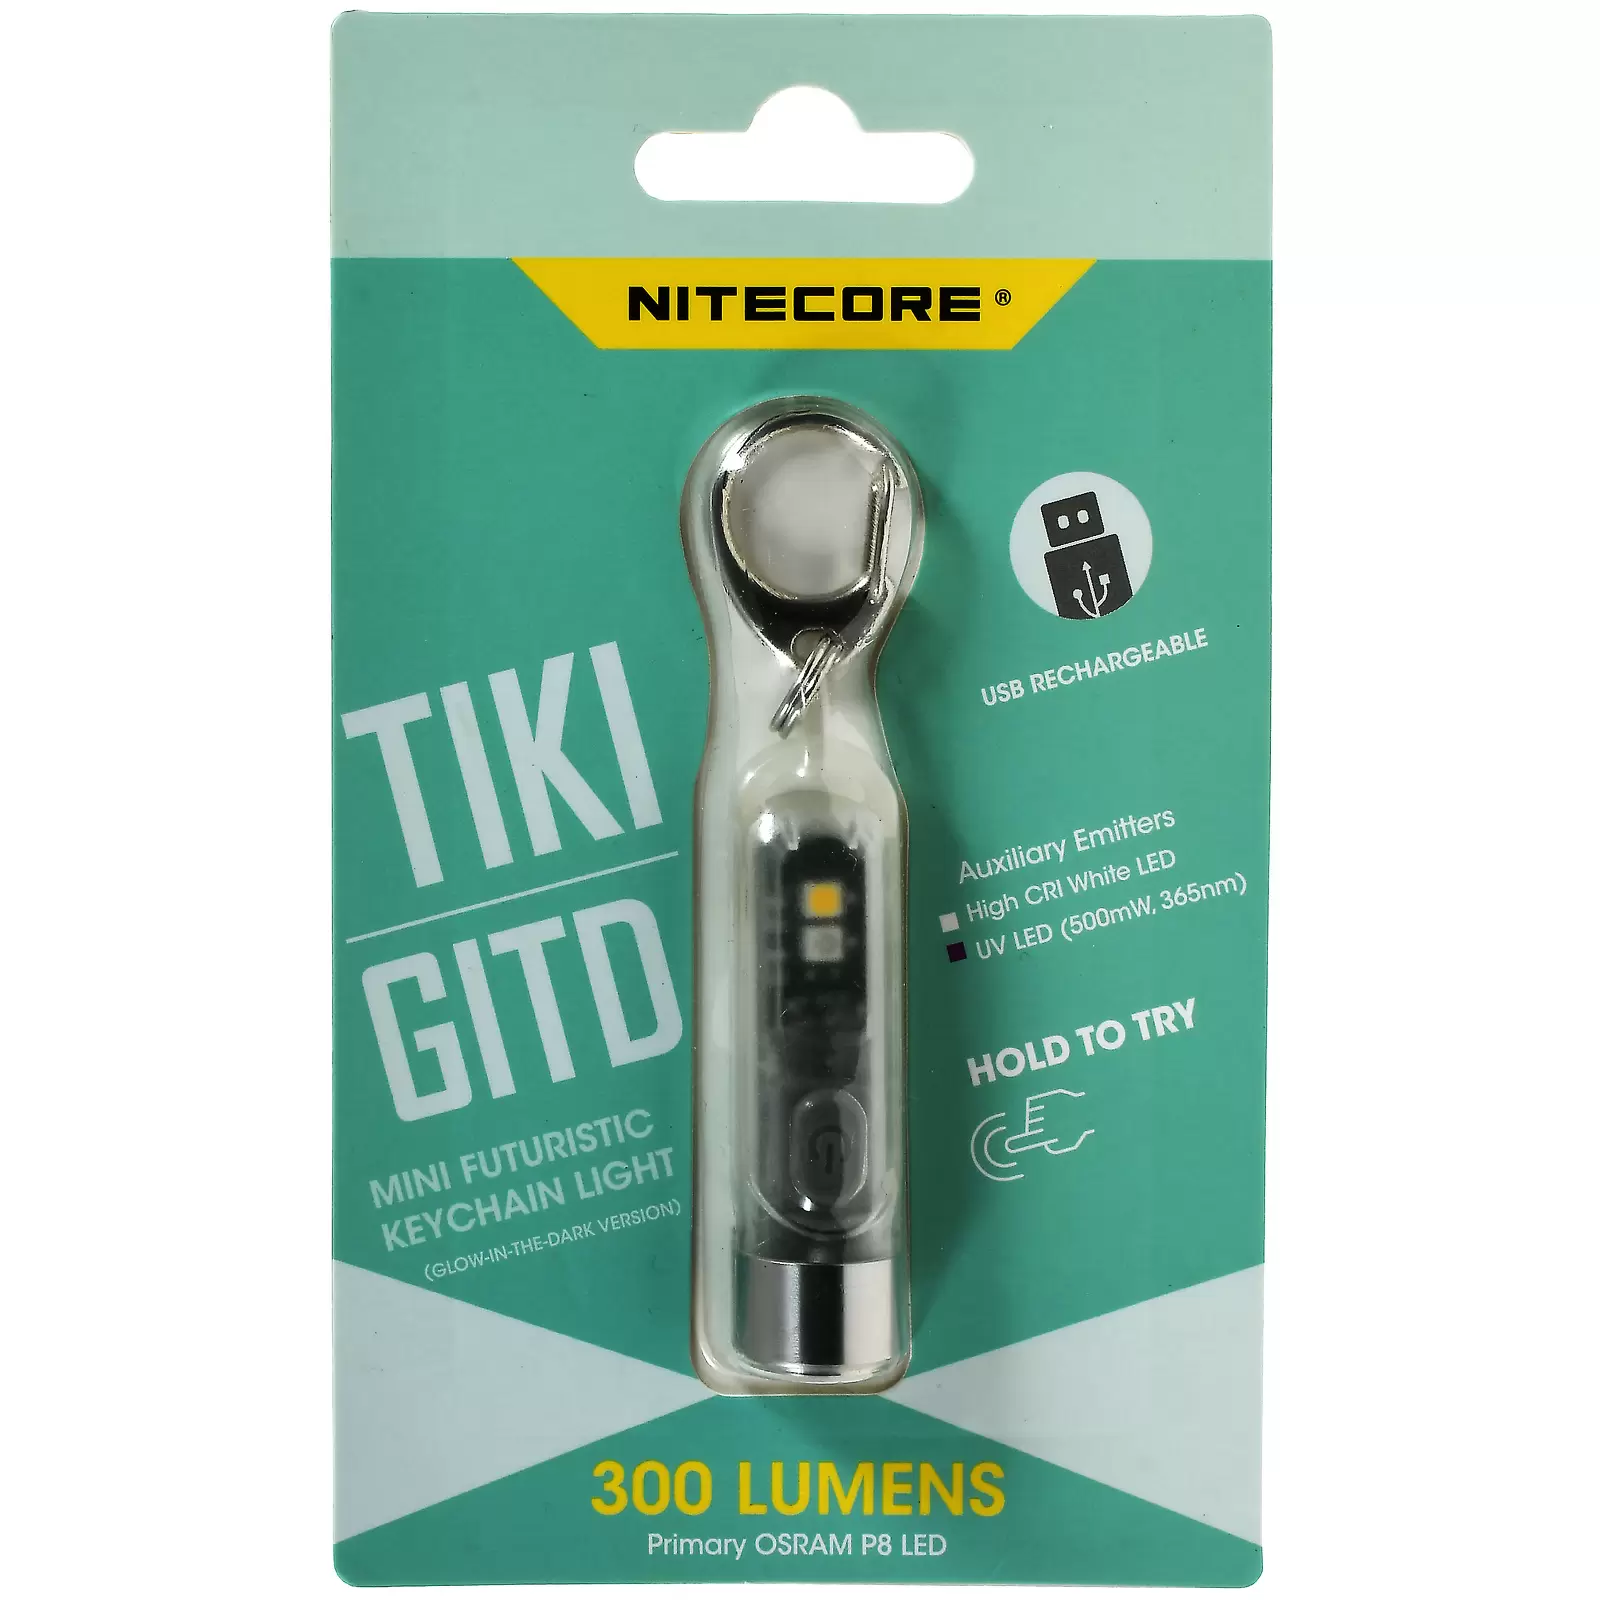 Schlüsselanhänger-Taschenlampe Nitecore TIKI GITD - Glow in the Dark, mit Micro-USB